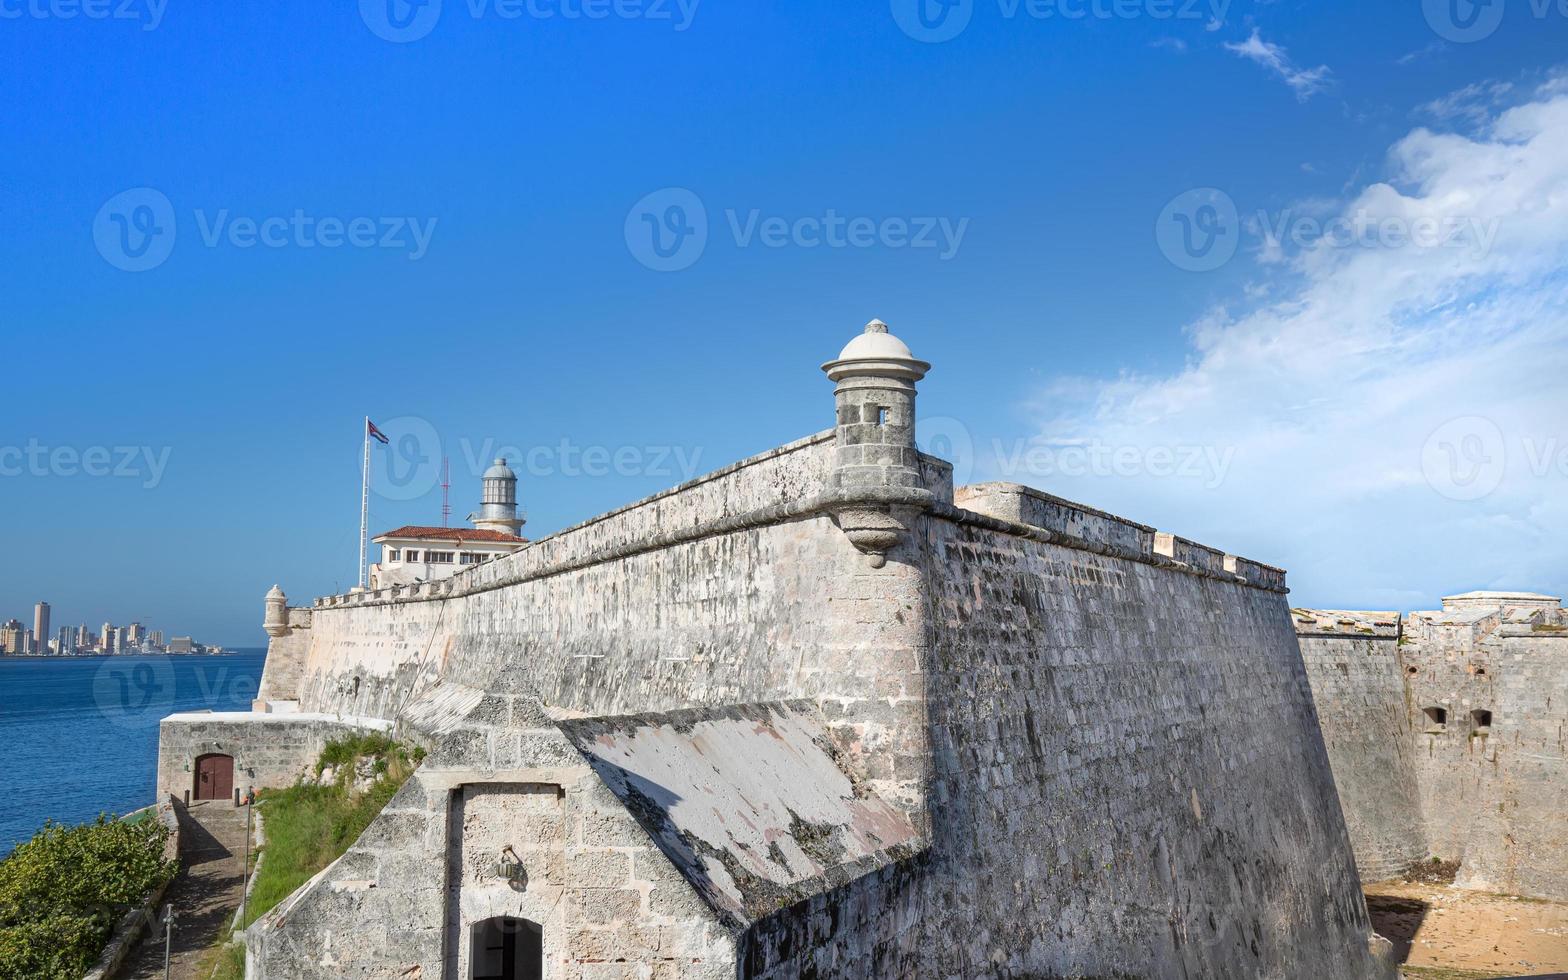 berömda morro slott castillo de los tres reyes del morro, en fästning som vaktar ingången till Havanna Bay i Havanna, Kuba foto